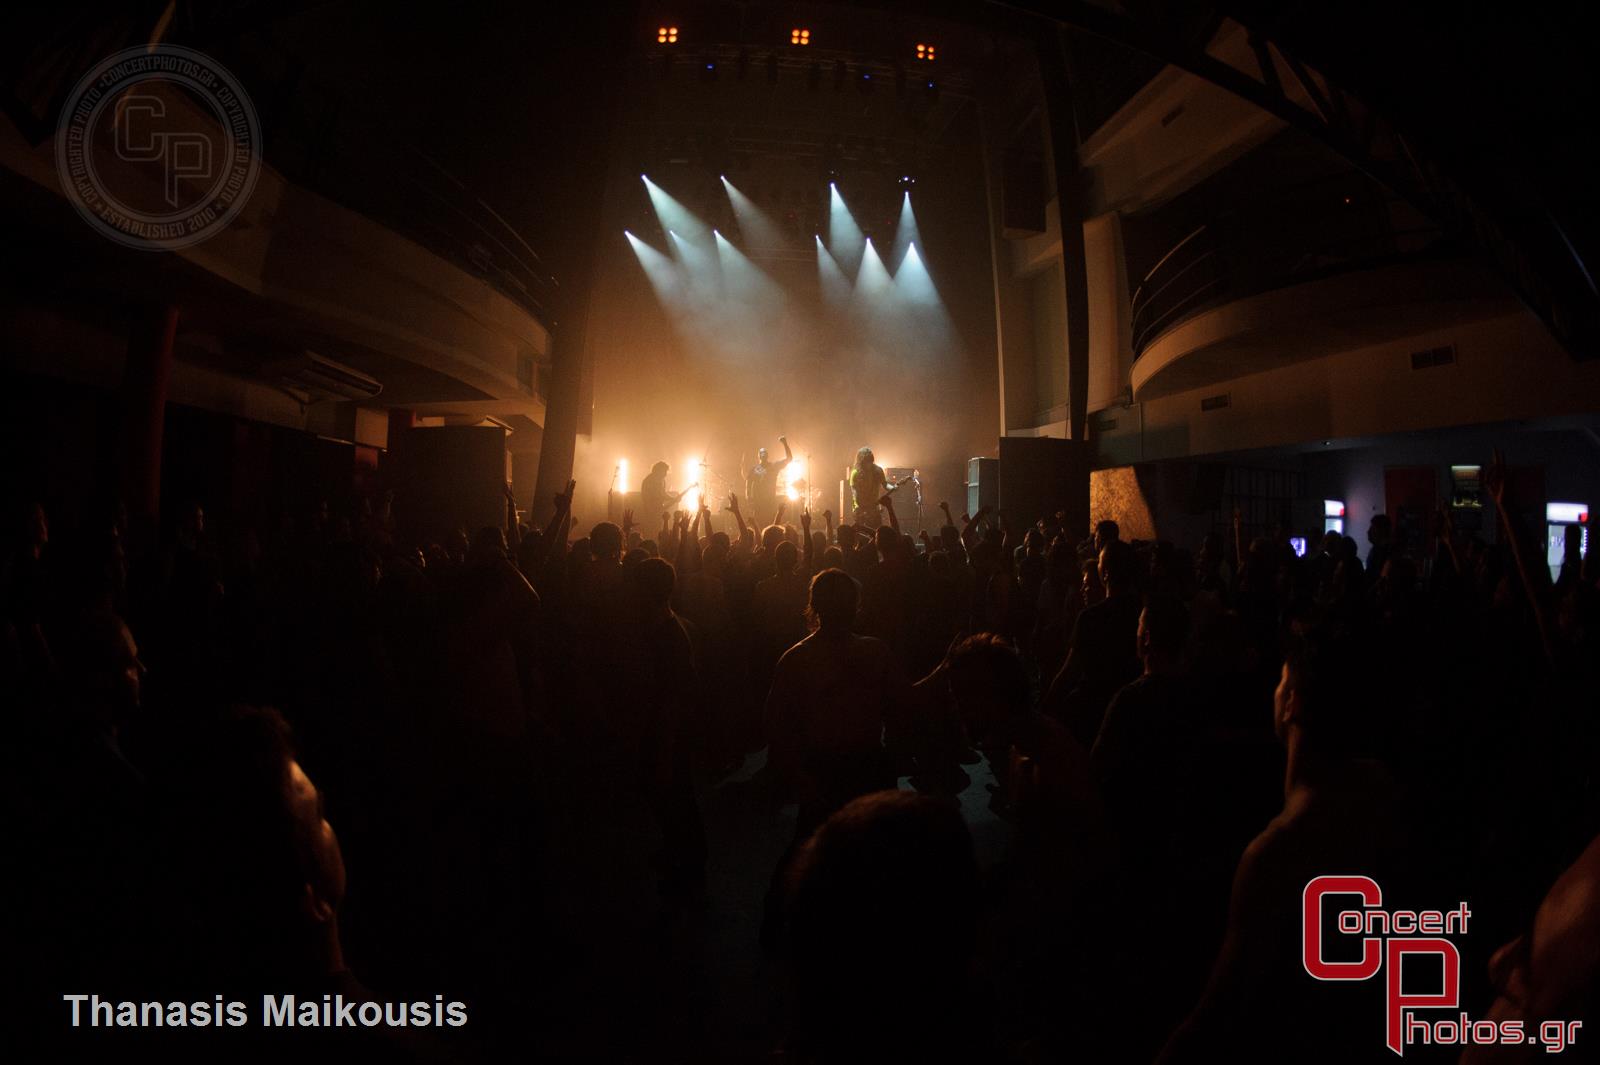 Sepultura-Sepultira photographer: Thanasis Maikousis - concertphotos_20140703_23_28_54